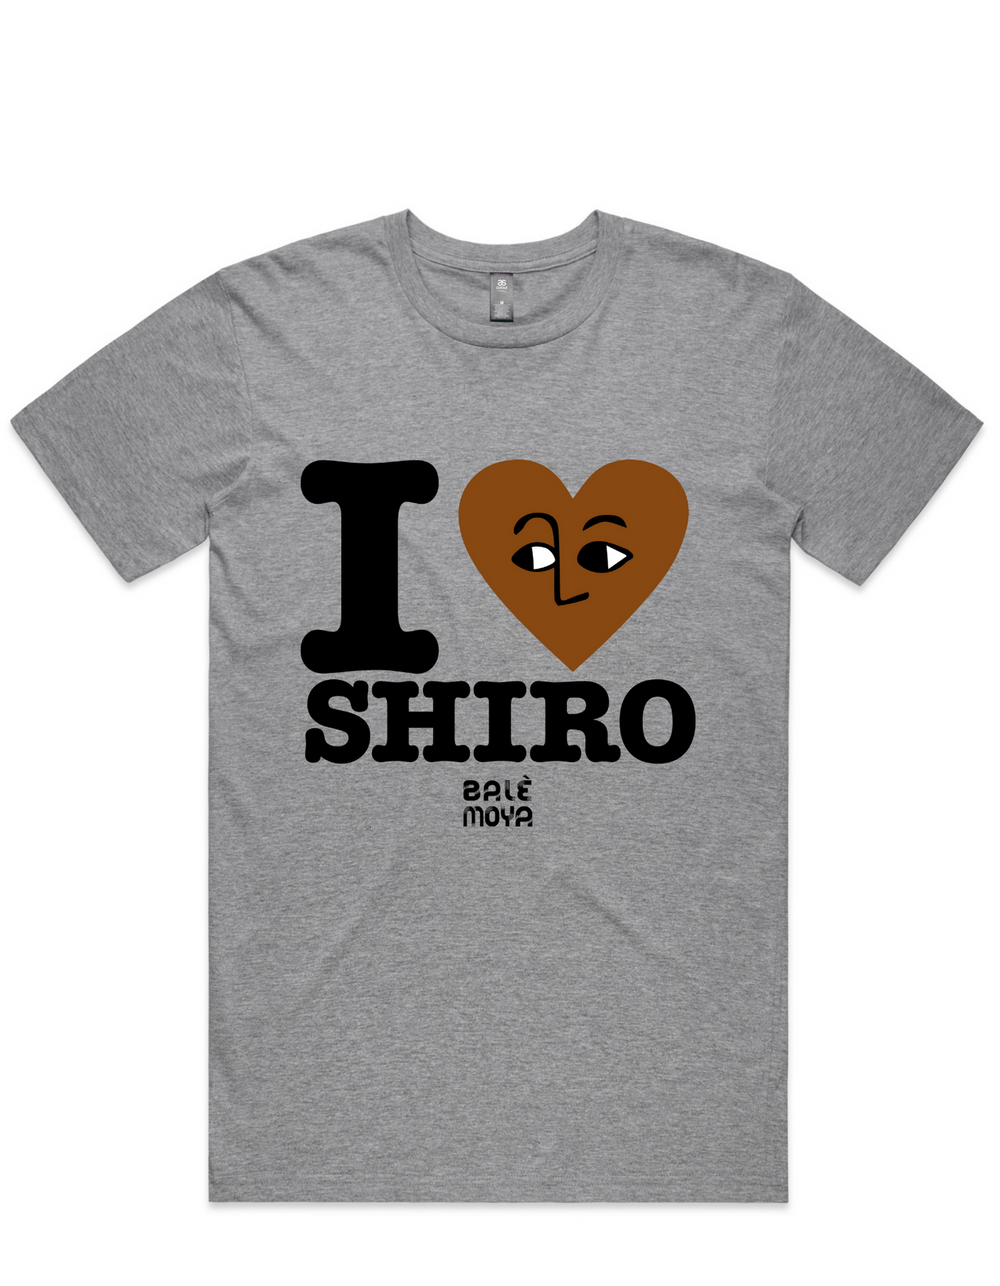 For Shiro Lovers Tee